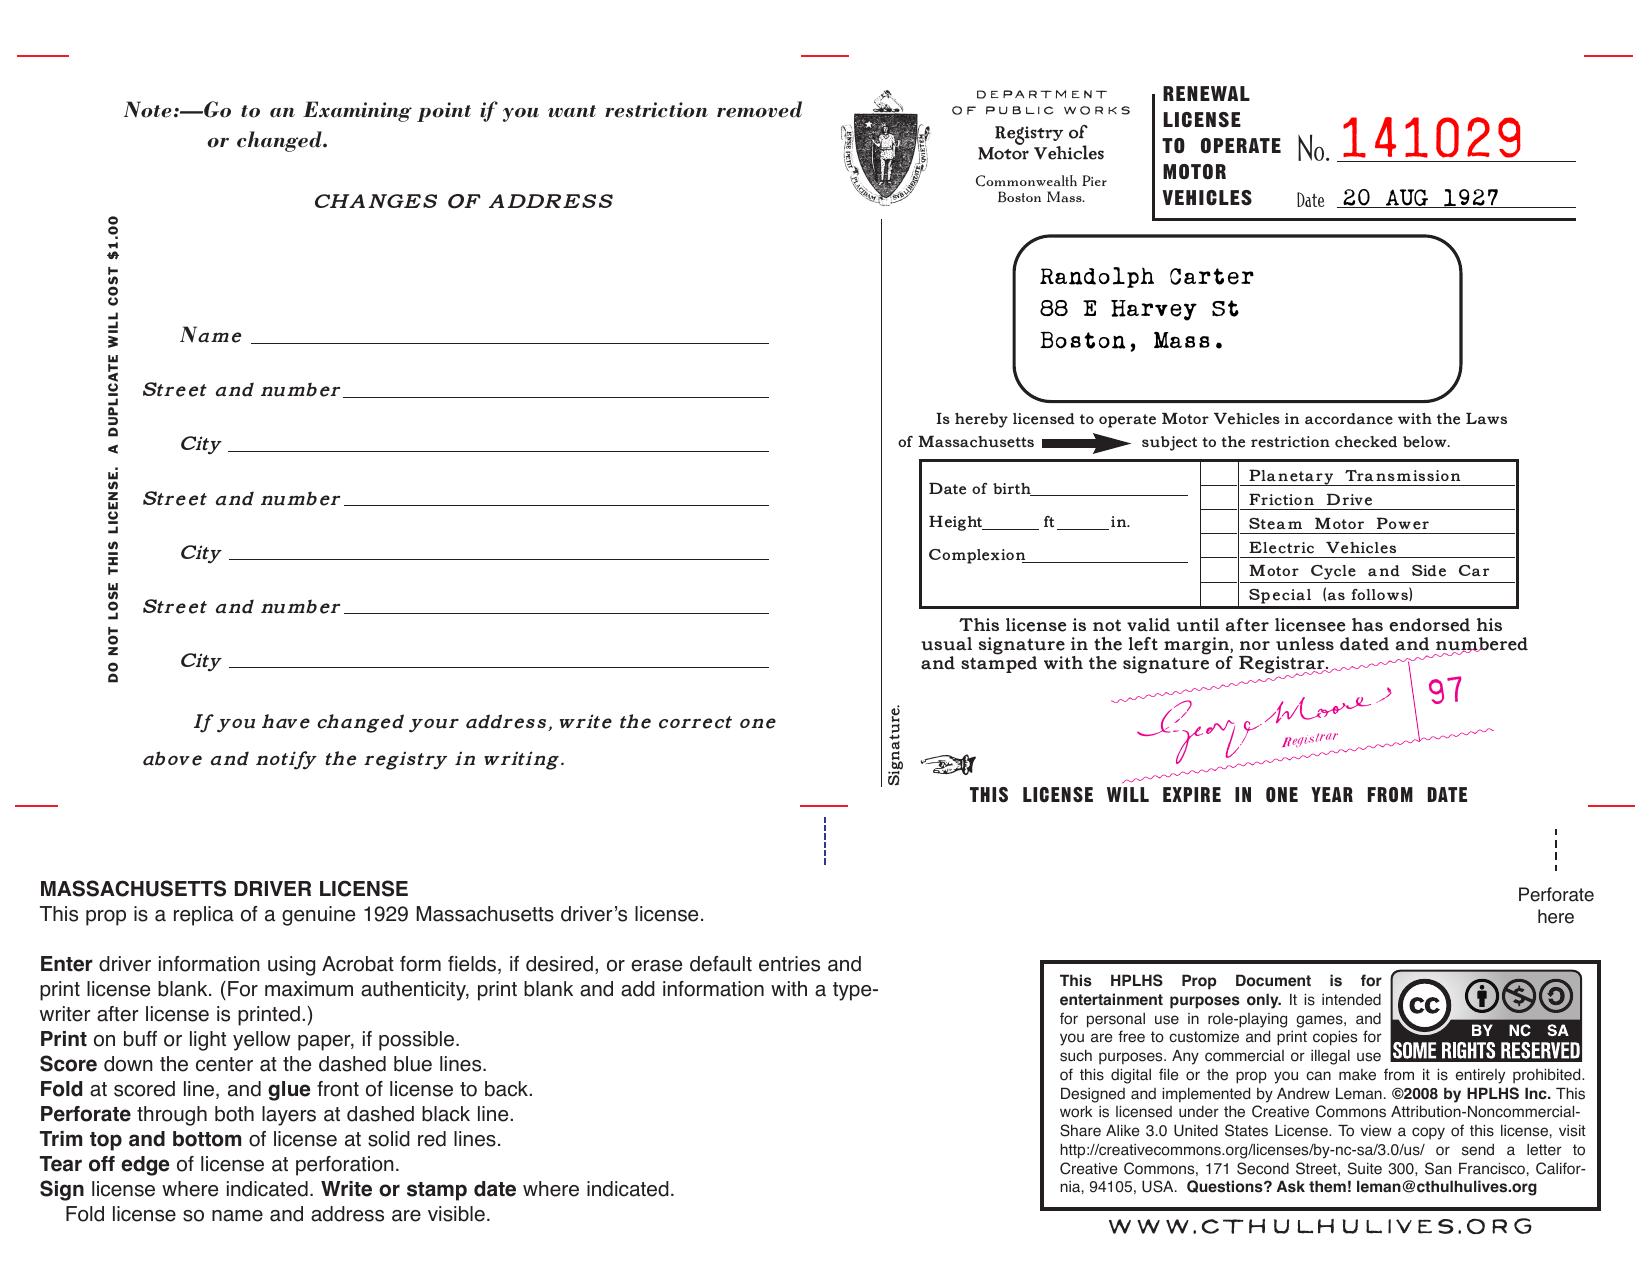 MA Driver License (Page 1)